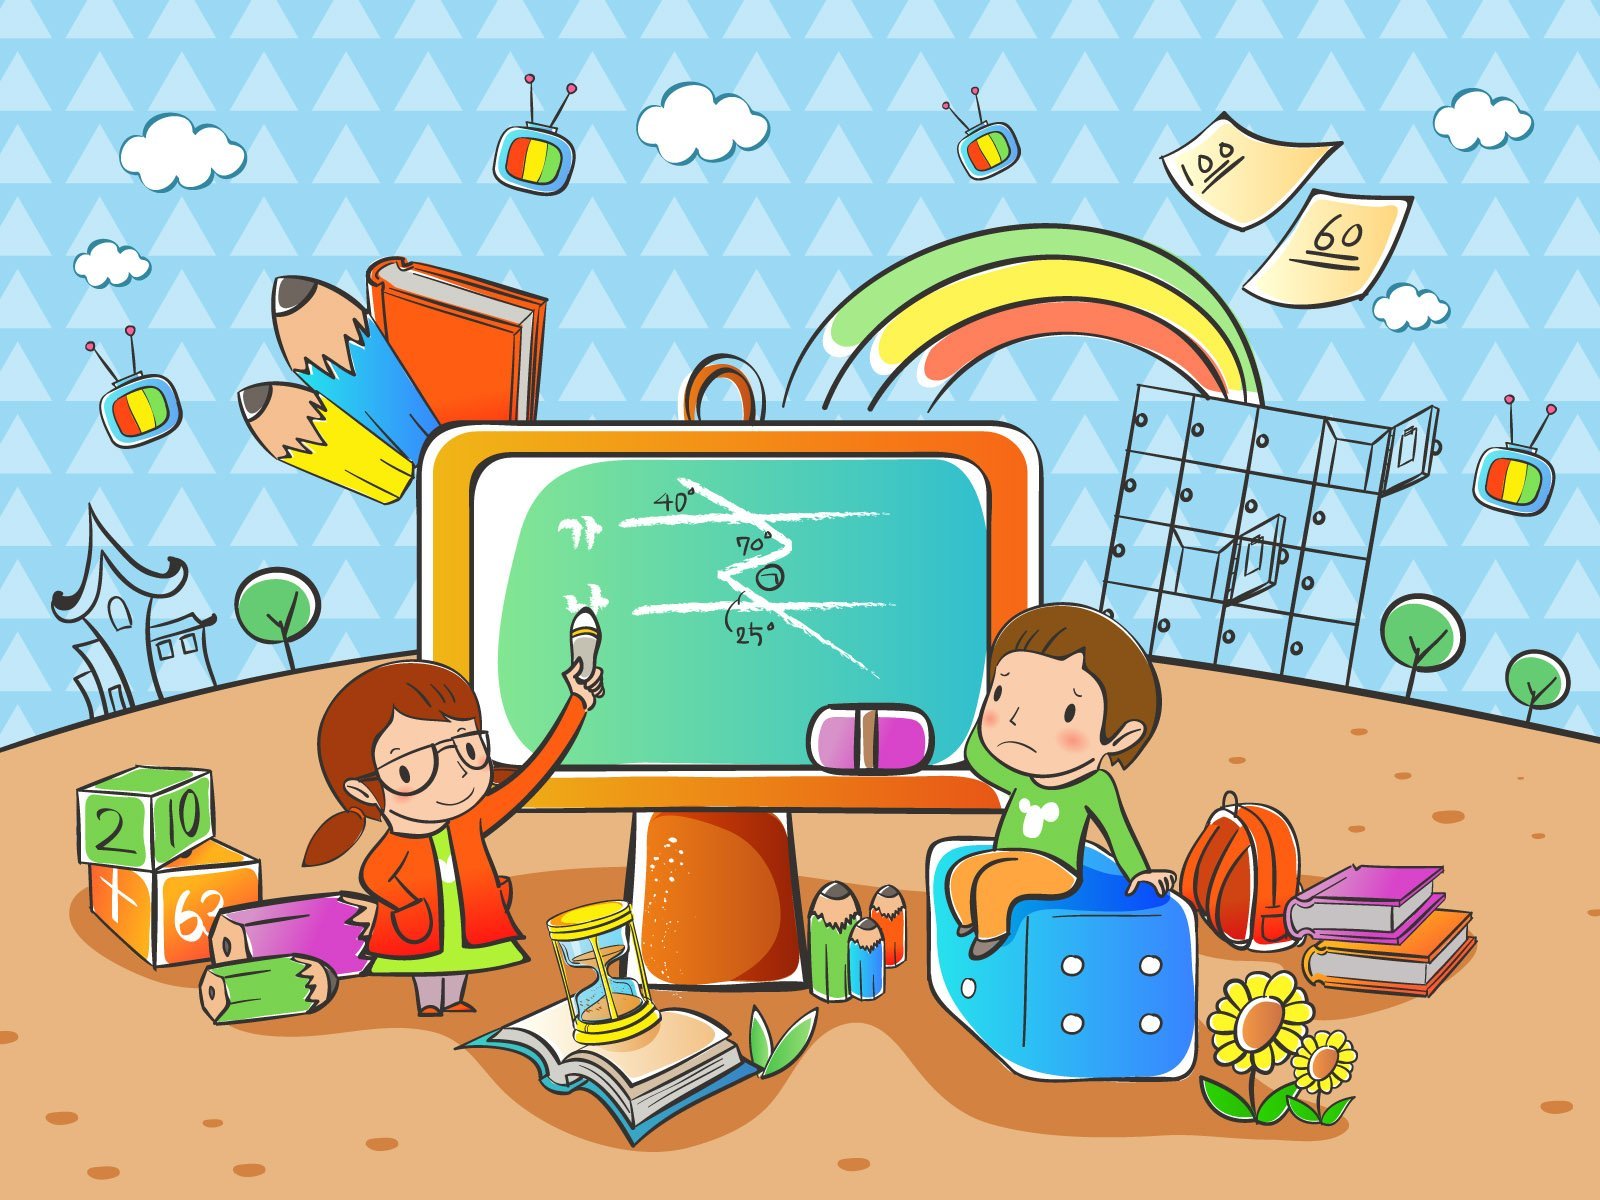 Игровой урок по математике. Иллюстрации на школьную тему. Мультяшные школьники. Интерактивные игры. Компьютерные рисунки детей.